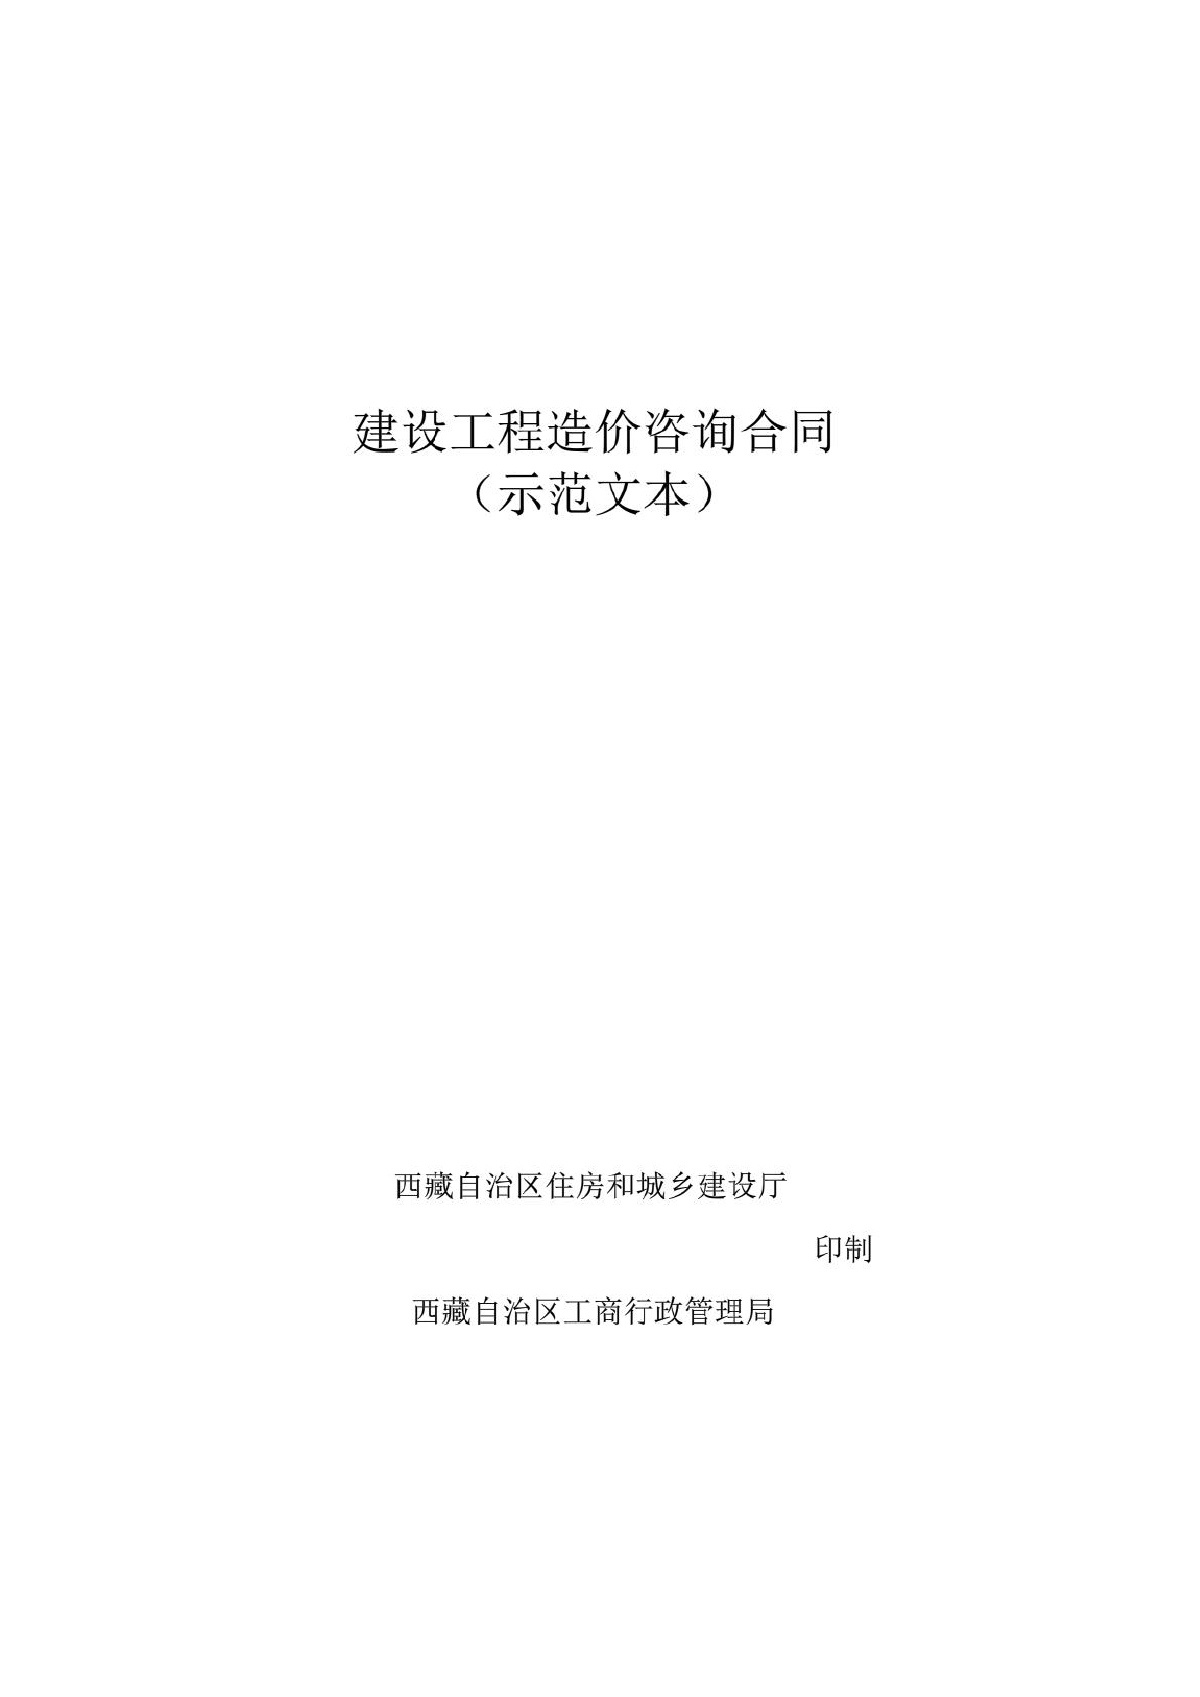 西藏自治区建设工程造价咨询合同(示范文本)-图一